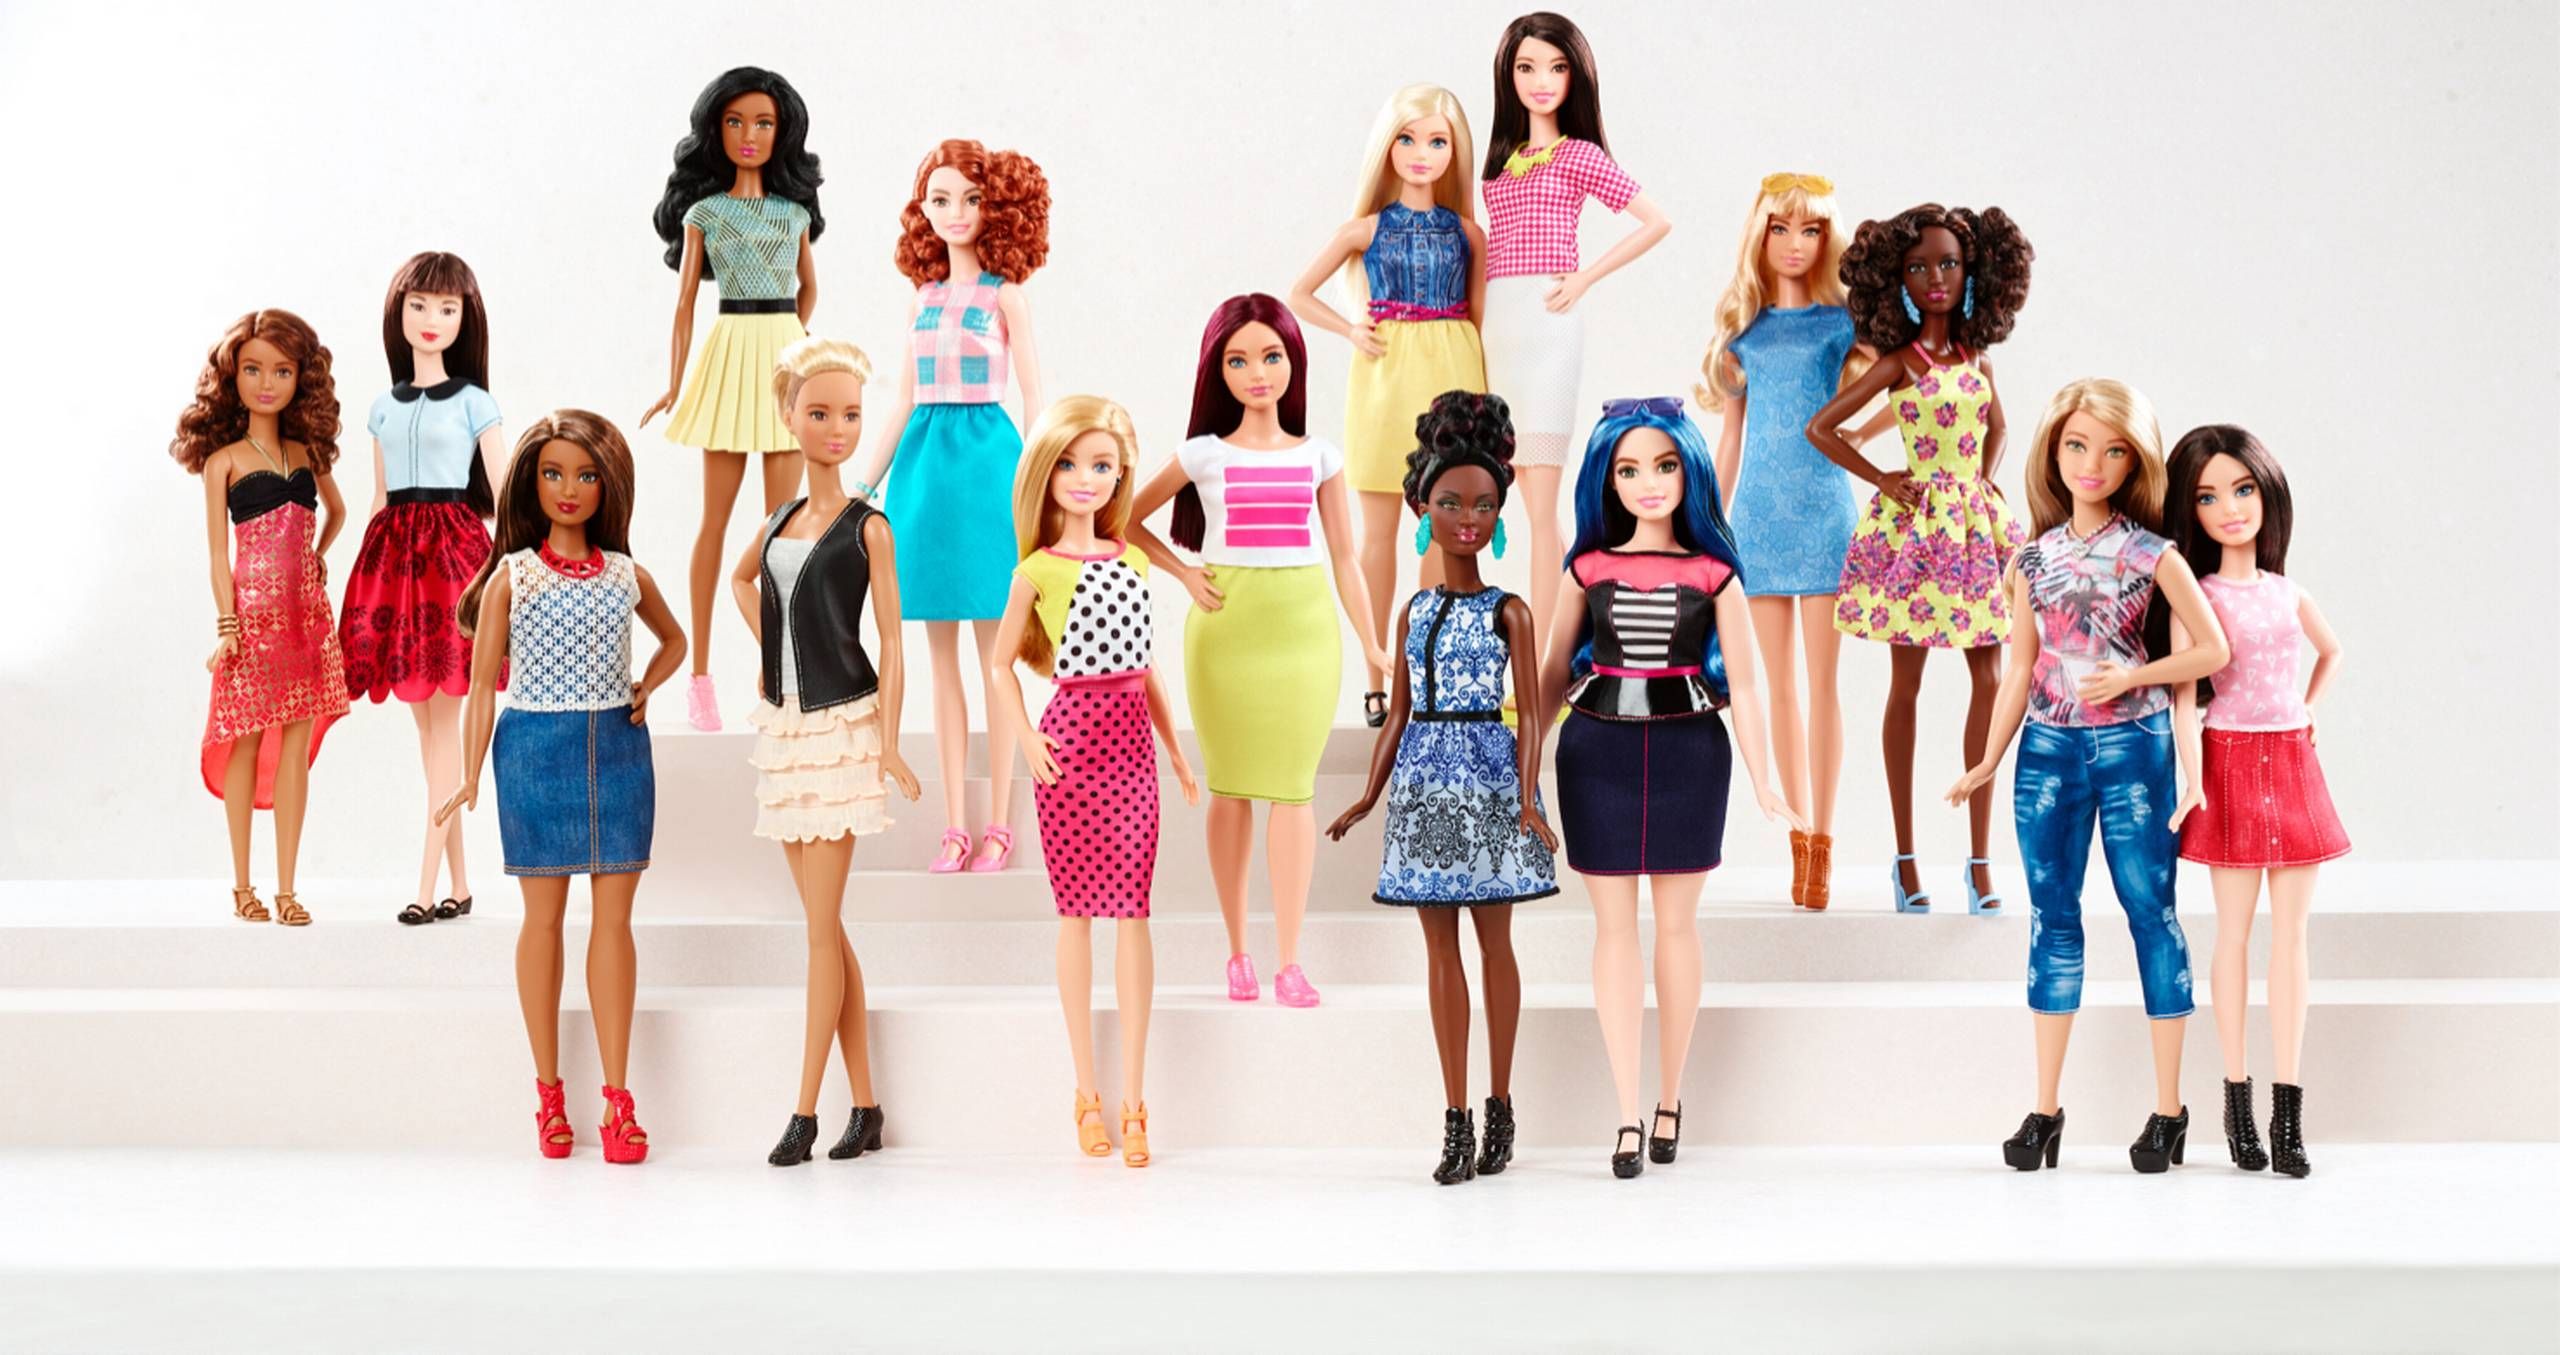 Børns dag Poleret Midlertidig Efter 57 år med modelmål: Nu får Barbie en ny krop